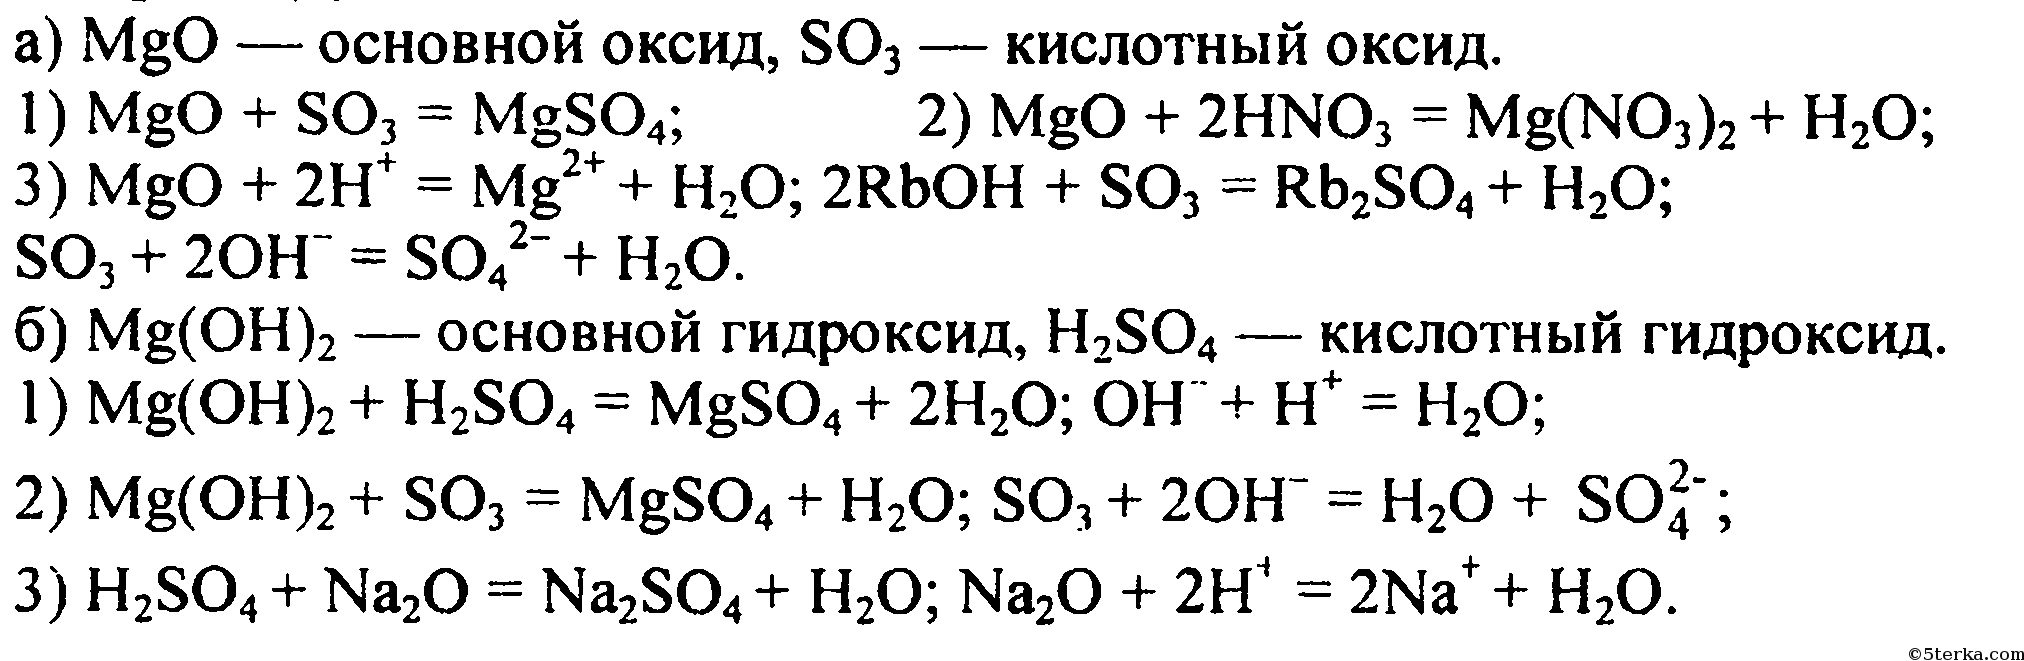 Mg h2so4 продукты реакции. Уравнение химической реакции MGO И so3. Химические уравнения магний хлор 2. Цепочка реакций с магнием. MGO+h2so4 уравнение реакции.